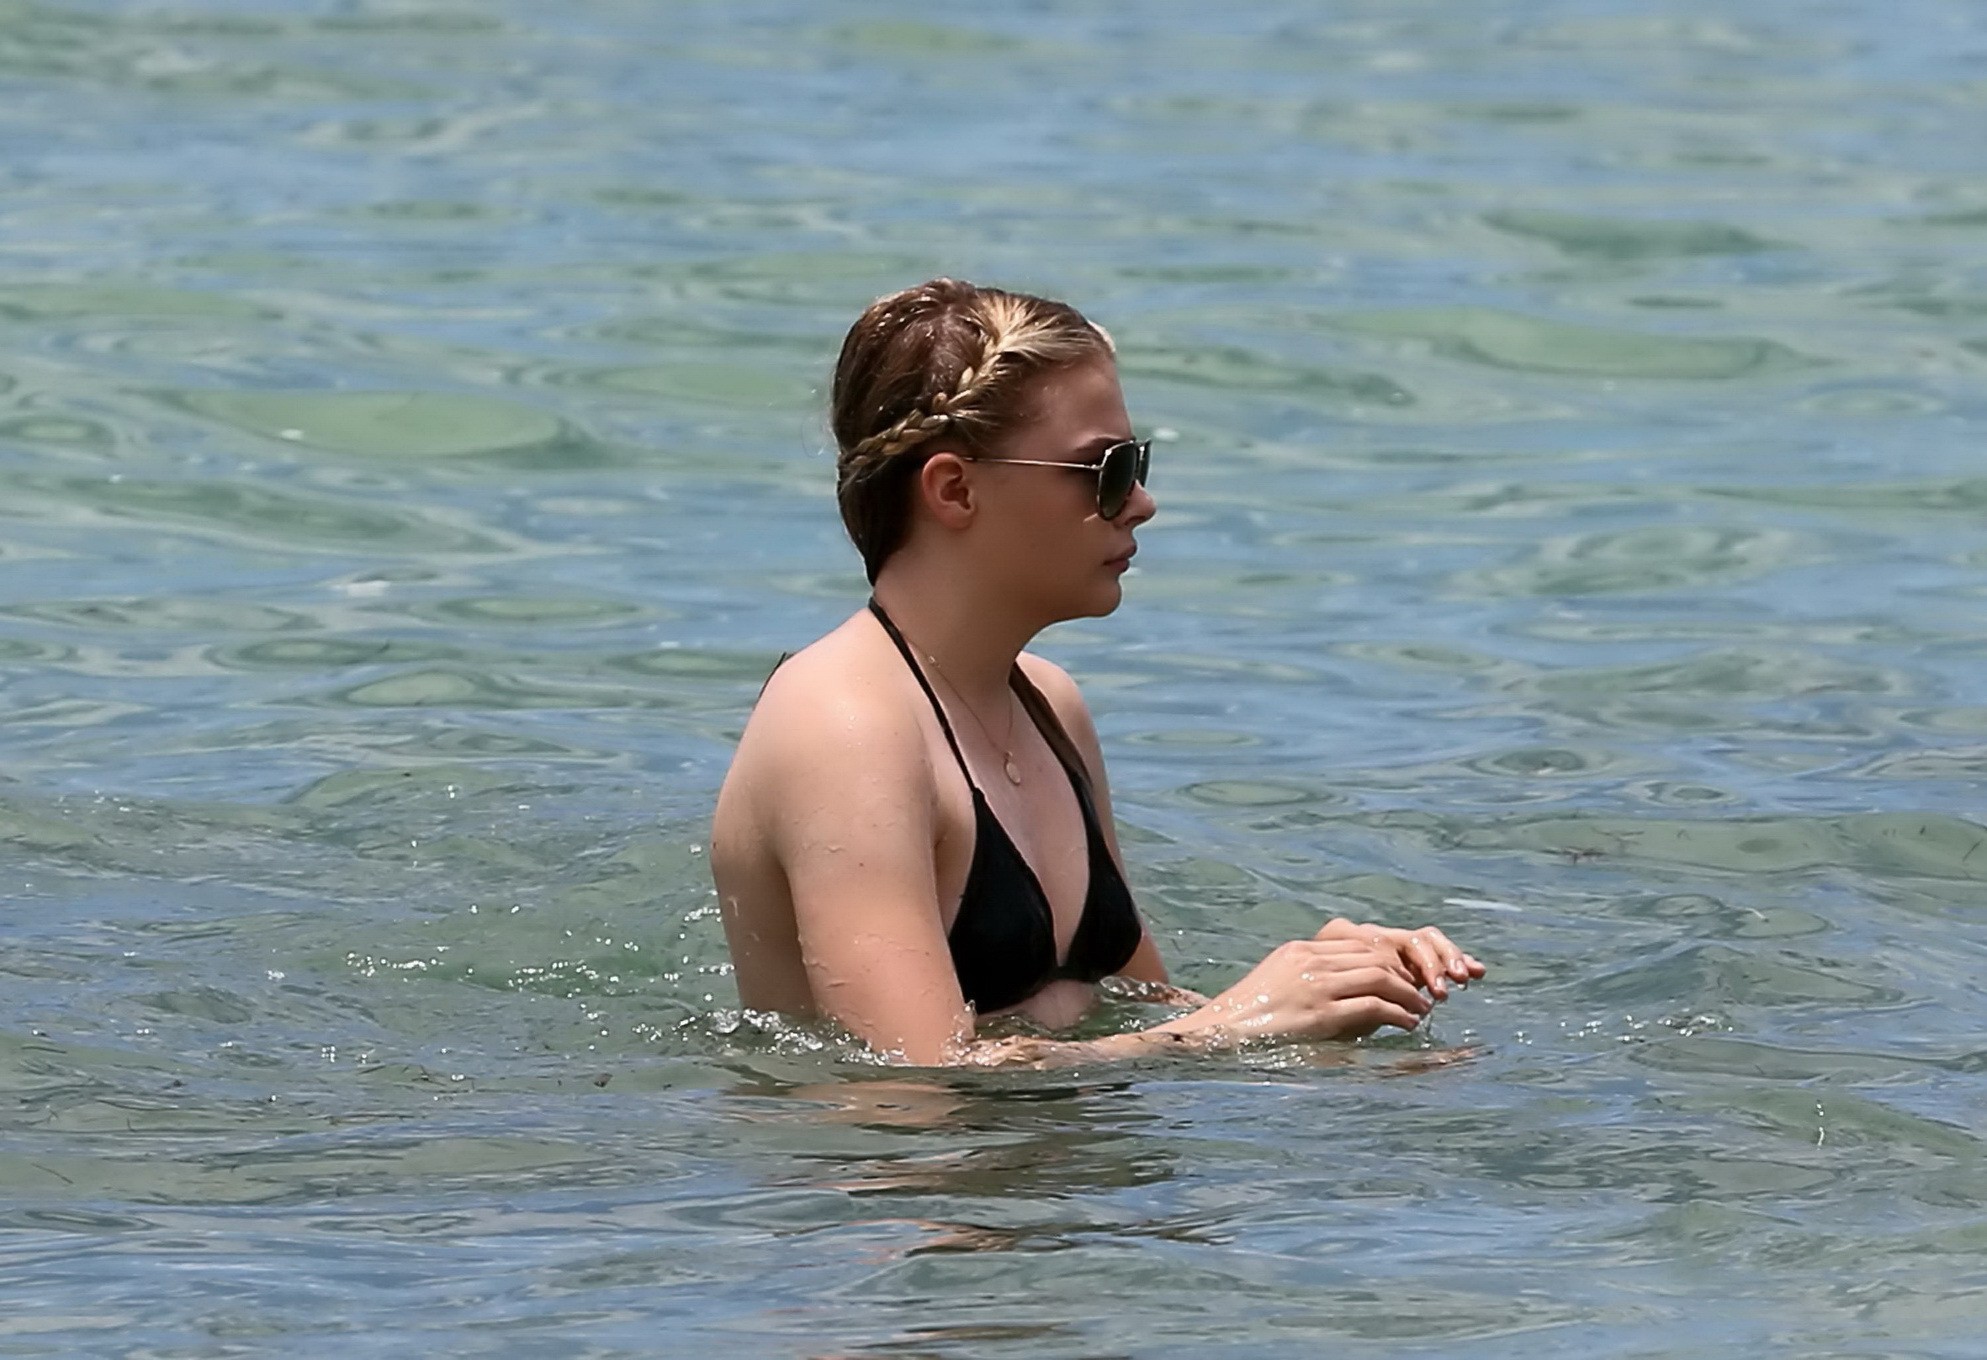 Chloe moretz erwischt in einem winzigen schwarzen bikini am strand in miami
 #75186641